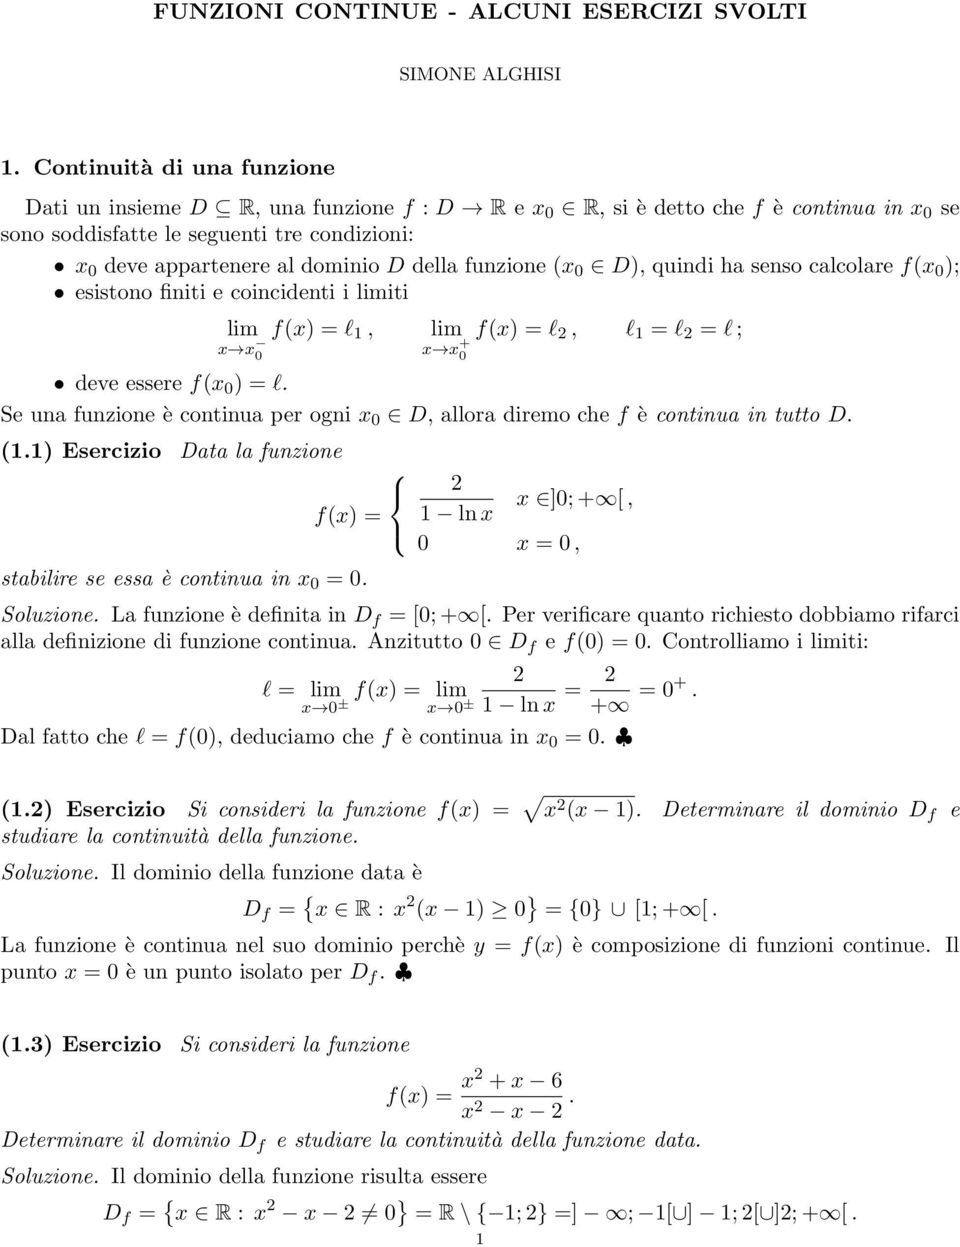 della funzione x 0 D), quindi ha senso calcolare fx 0 ); esistono finiti e coincidenti i iti l 1, l, l 1 = l = l ; deve essere fx 0 ) = l.